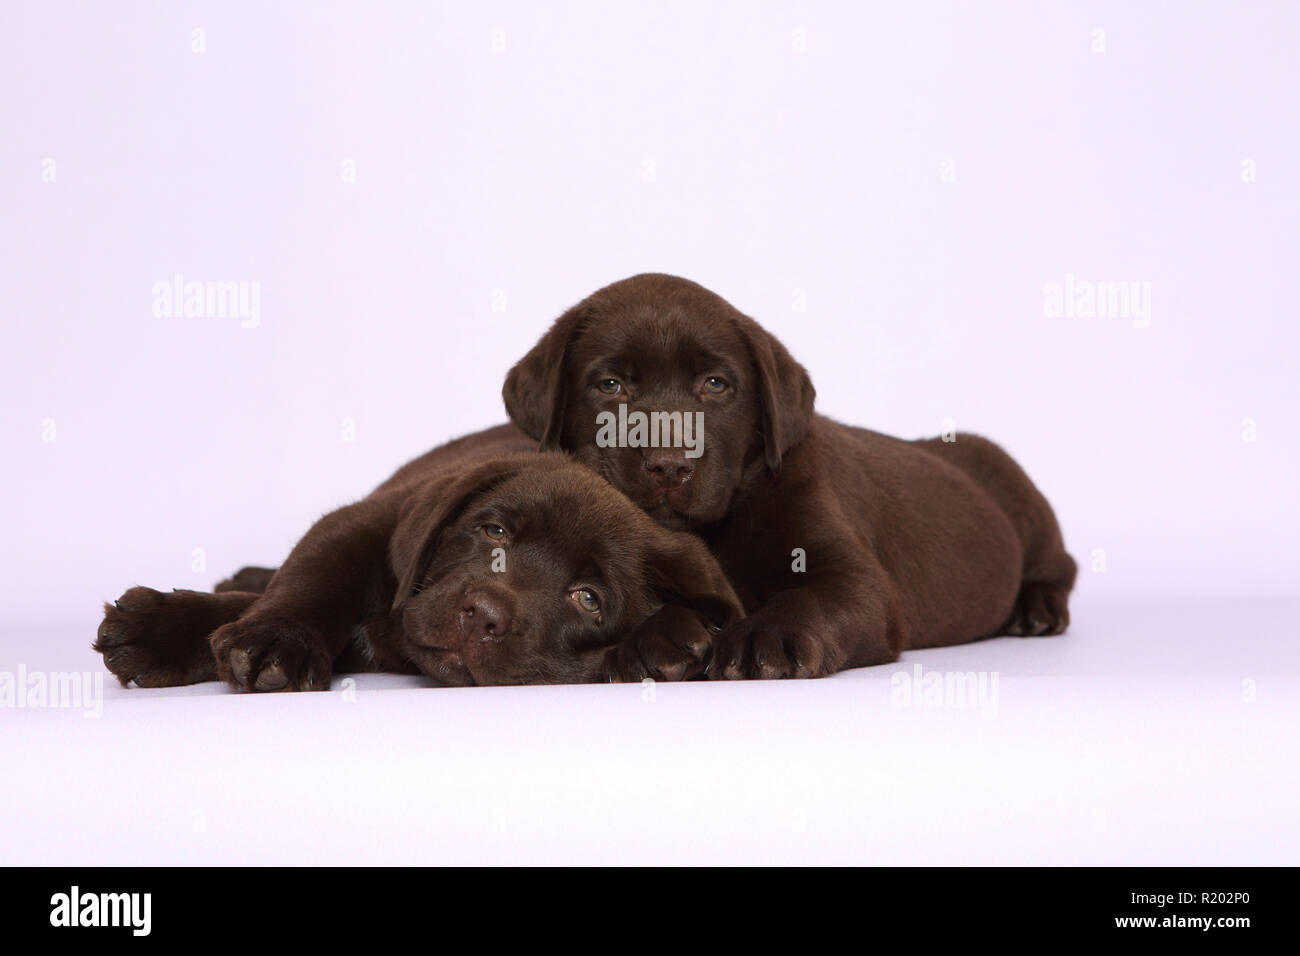 Il Labrador Retriever, Cioccolato Labrador. Due Cuccioli marrone (7 settimane di età) che giace accanto all'altra. Studio Immagine contro un sfondo rosa. Germania Foto Stock